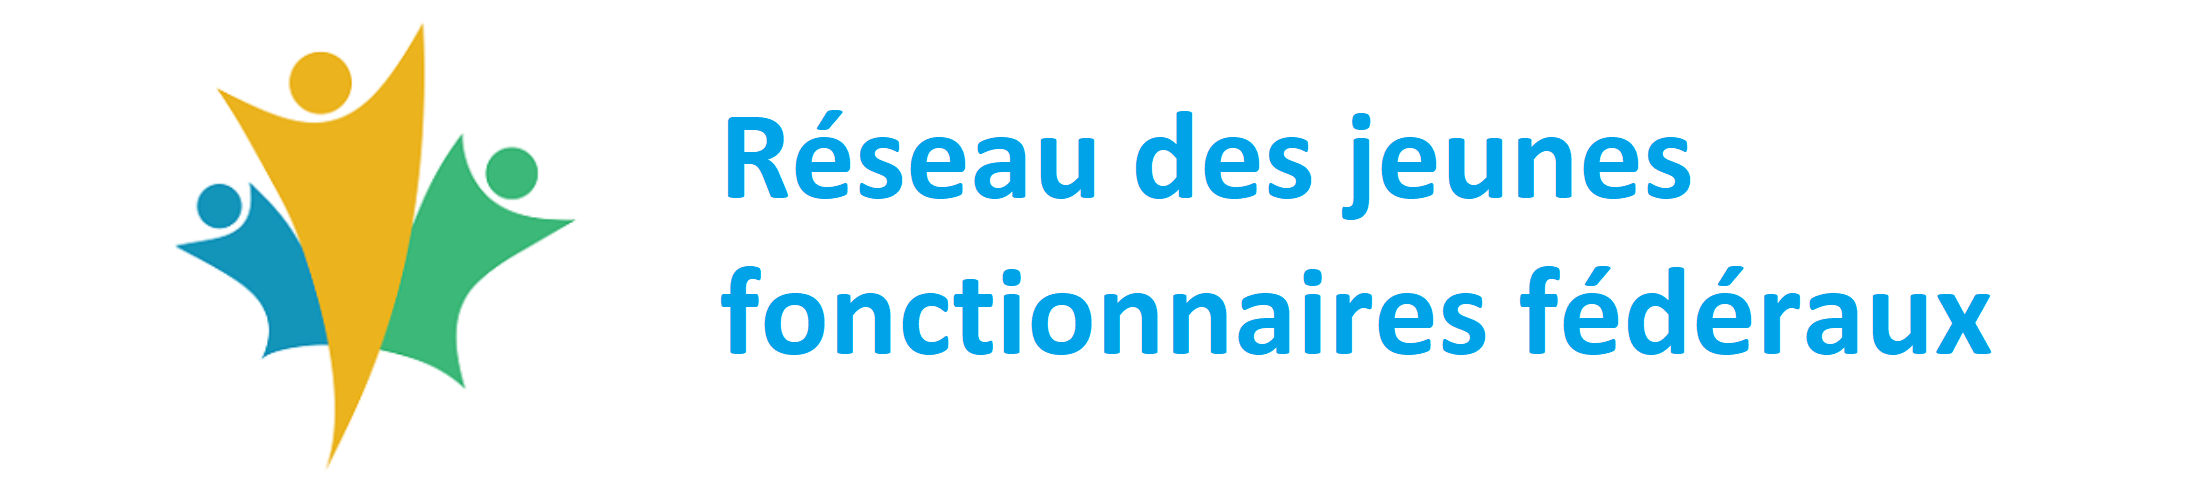 https://wiki.gccollab.ca/Réseau_des_jeunes_fonctionnaires_fédéraux/Accueil